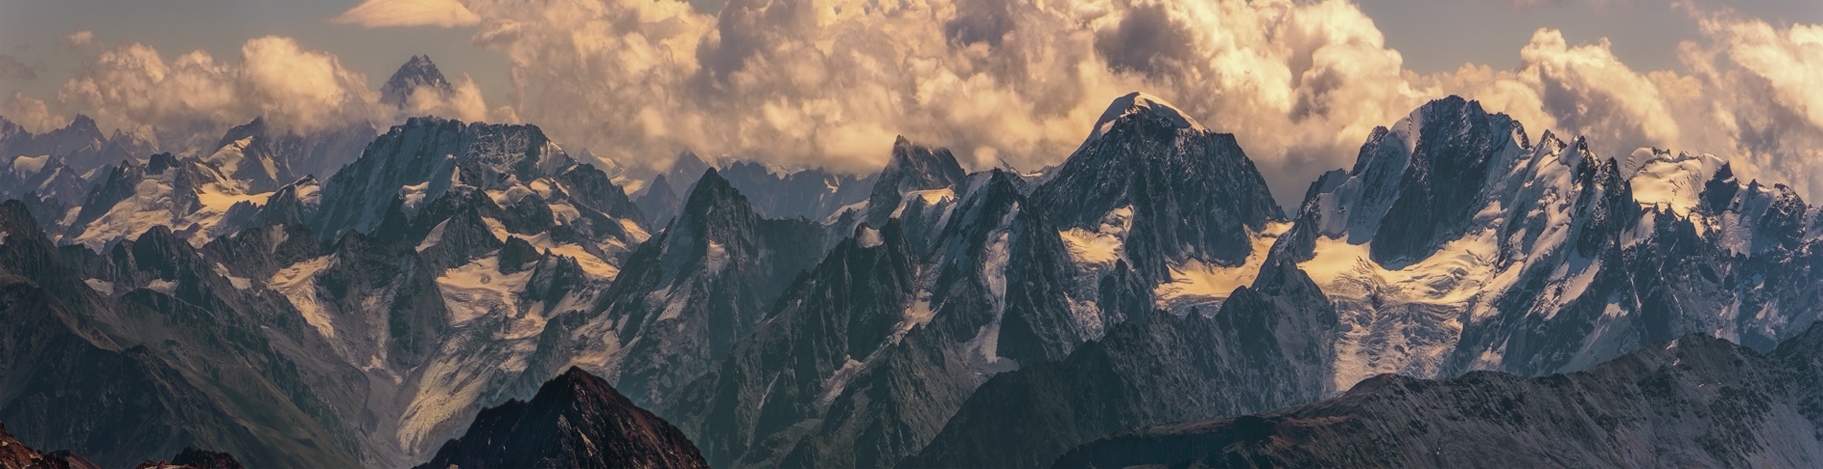 Утренняя панорама Кавказских гор